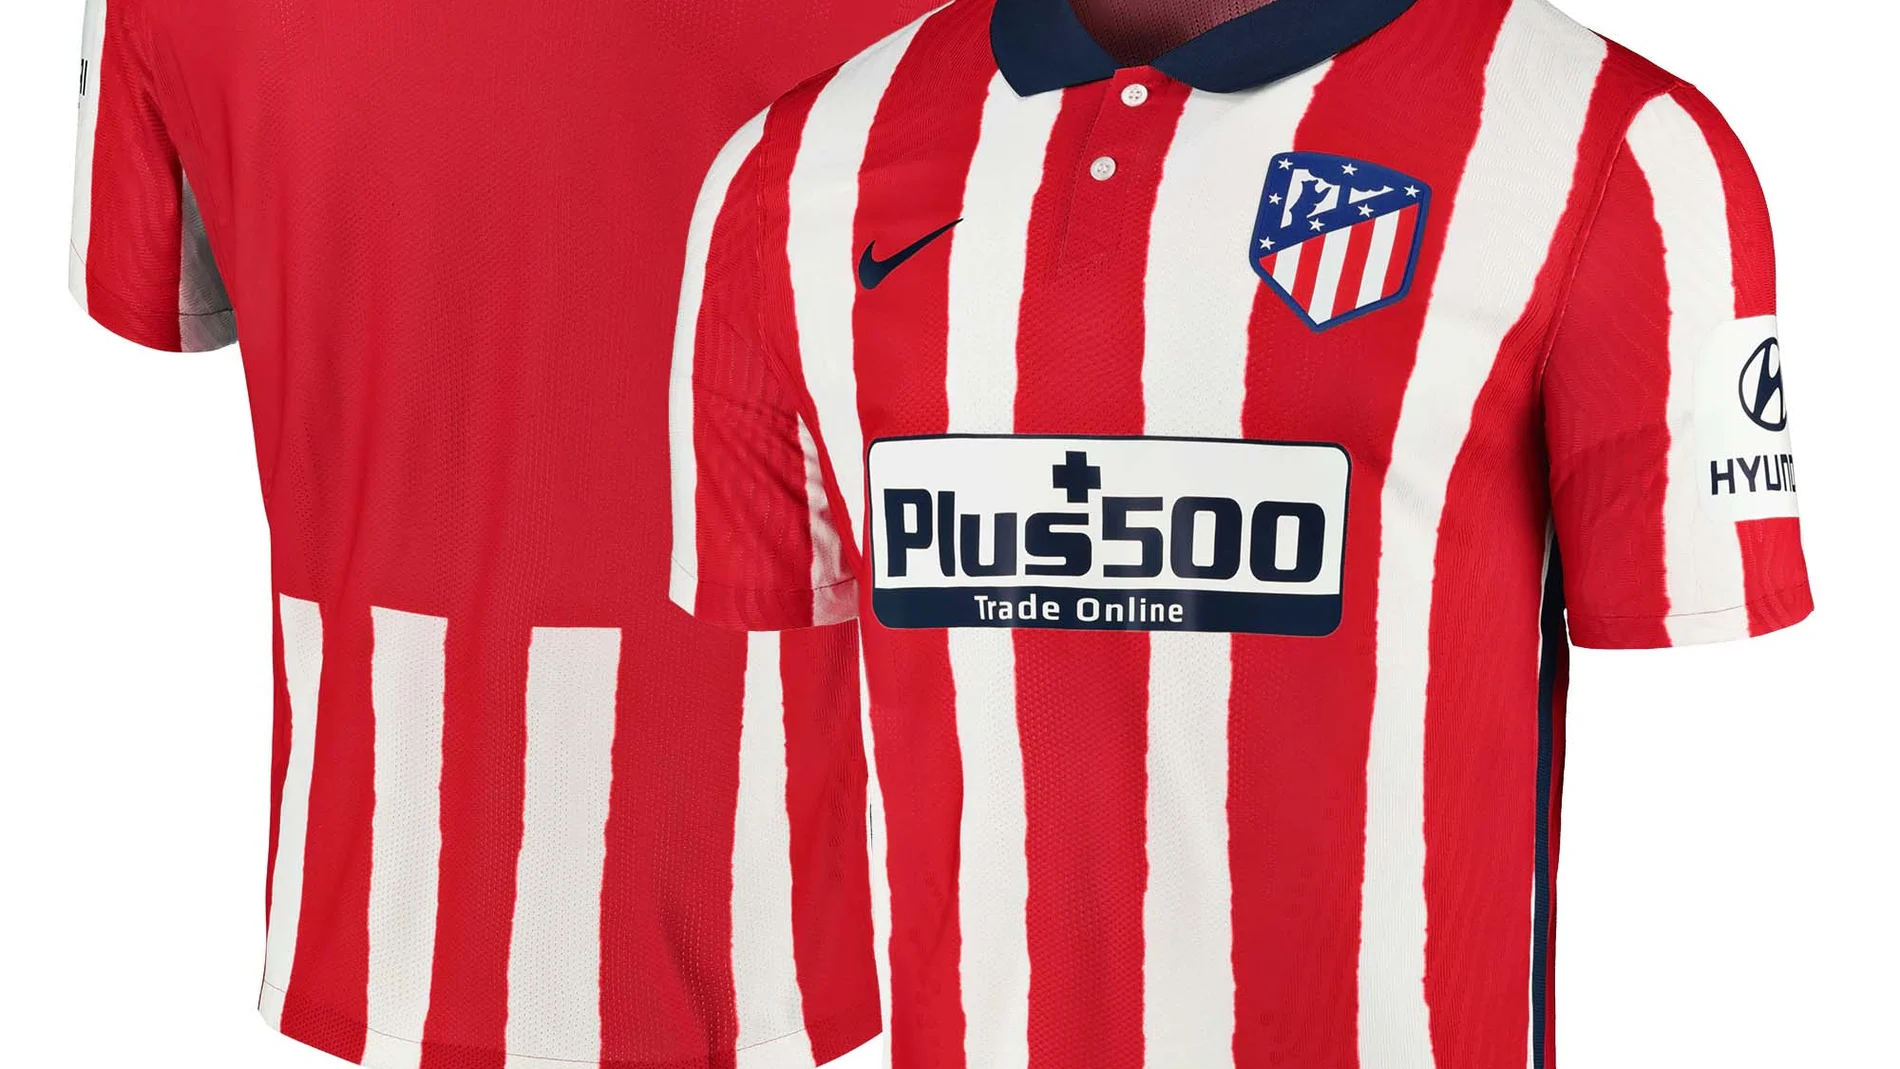 Camiseta del Atlético de Madrid para la temporada 2020-21.